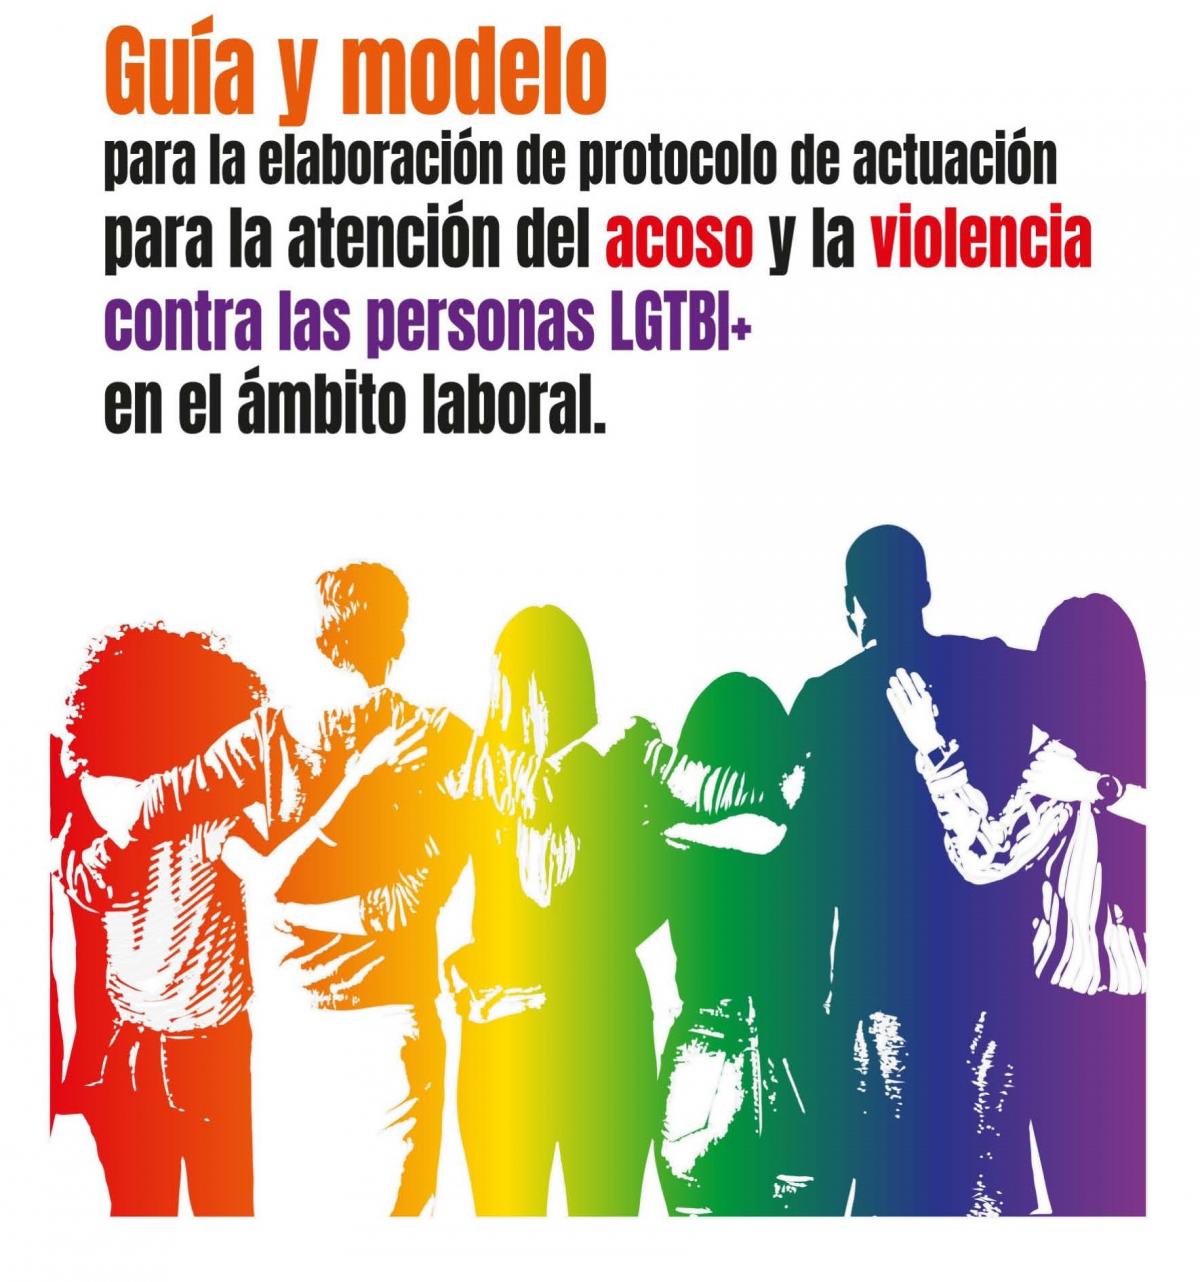 Guía y modelo para la elaboración de protocolo de actuación par la atención del acoso y la violencia contra las personas LGTBI+ en el ámbito laboral.